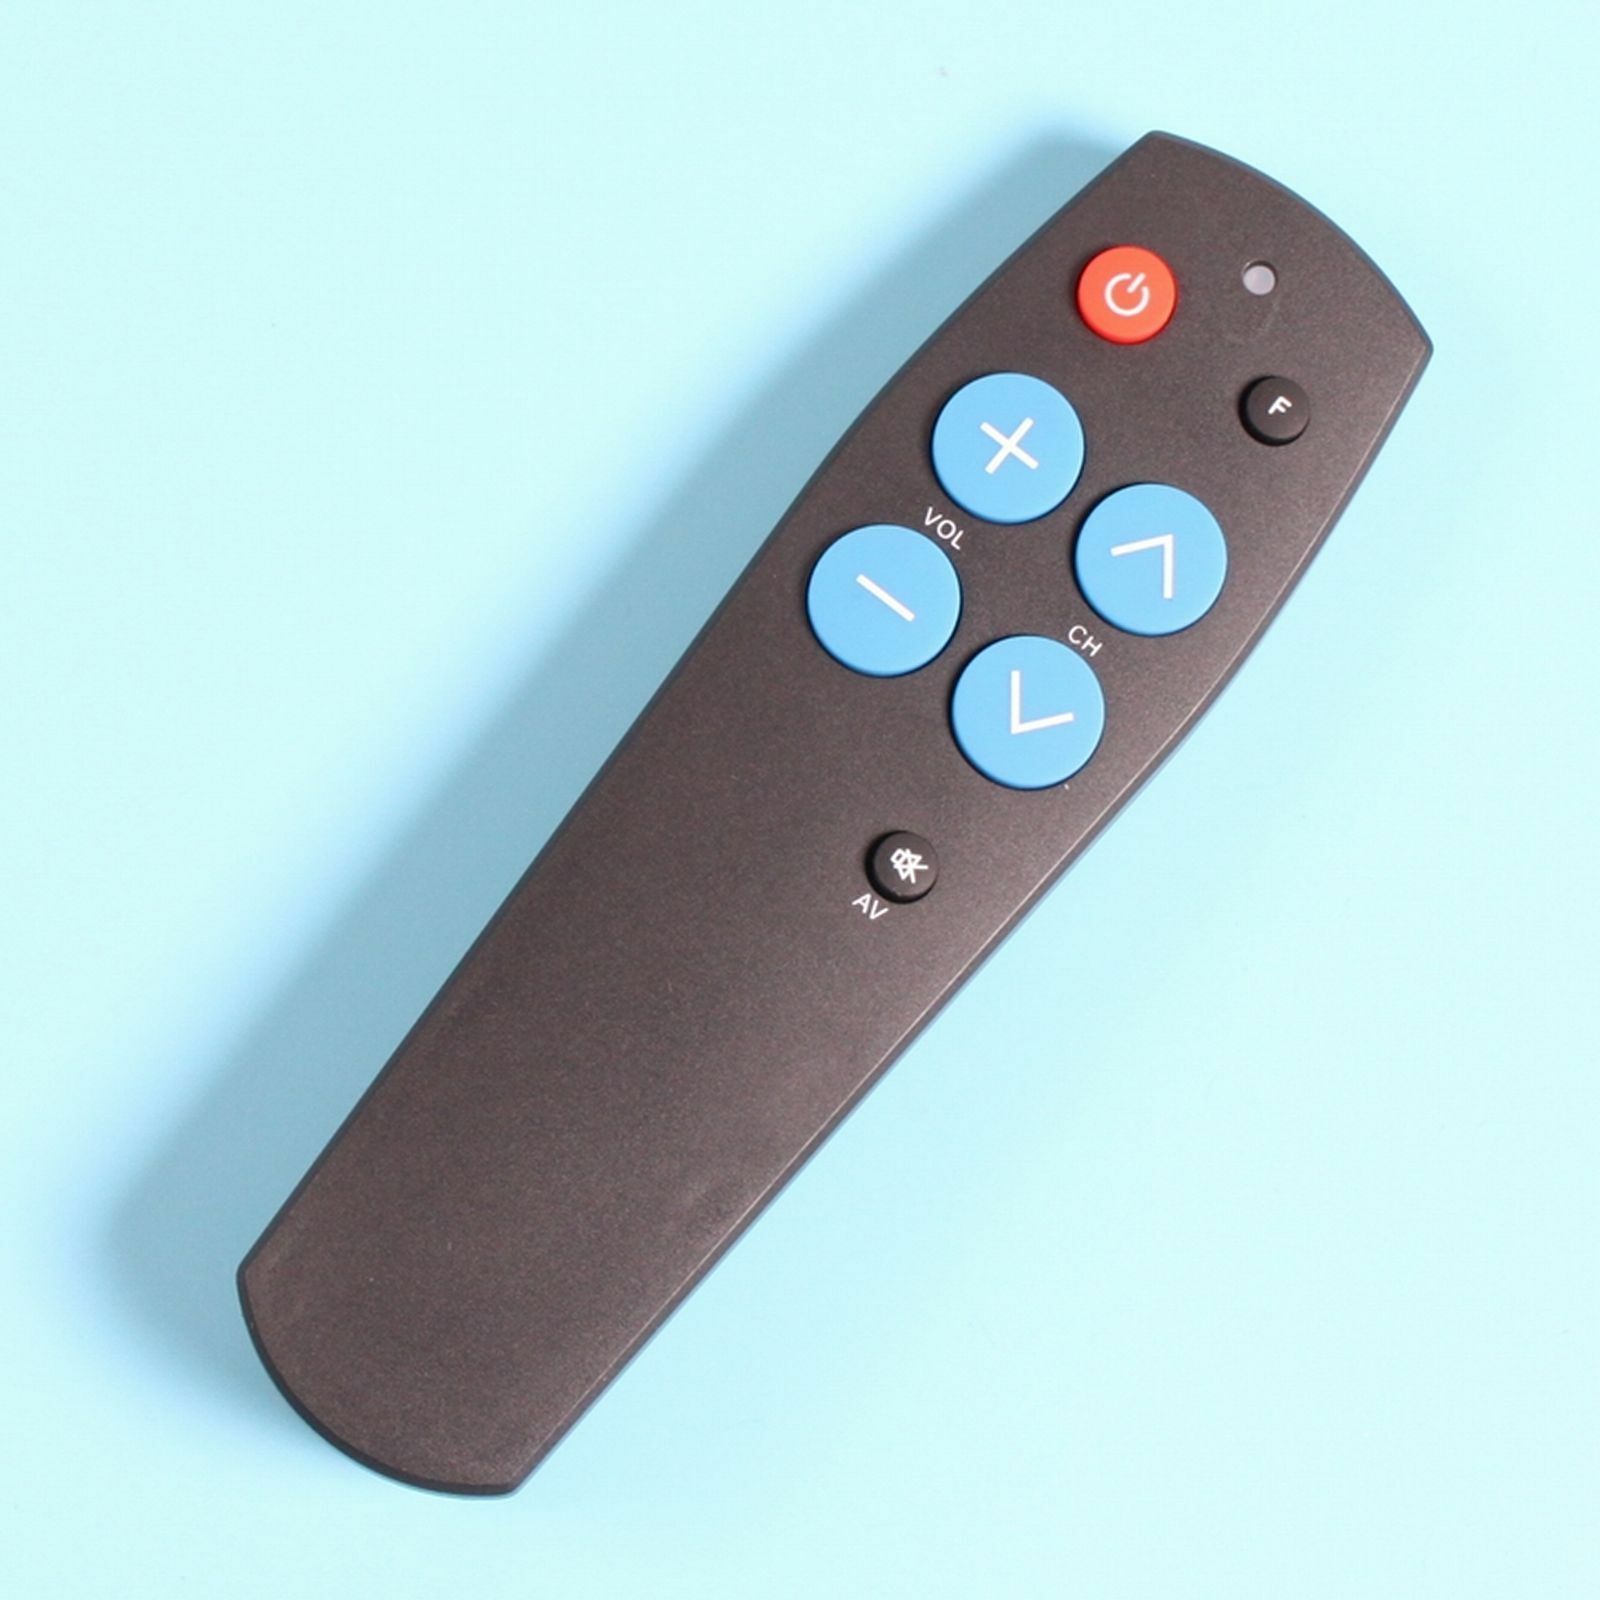 Big button TV remote